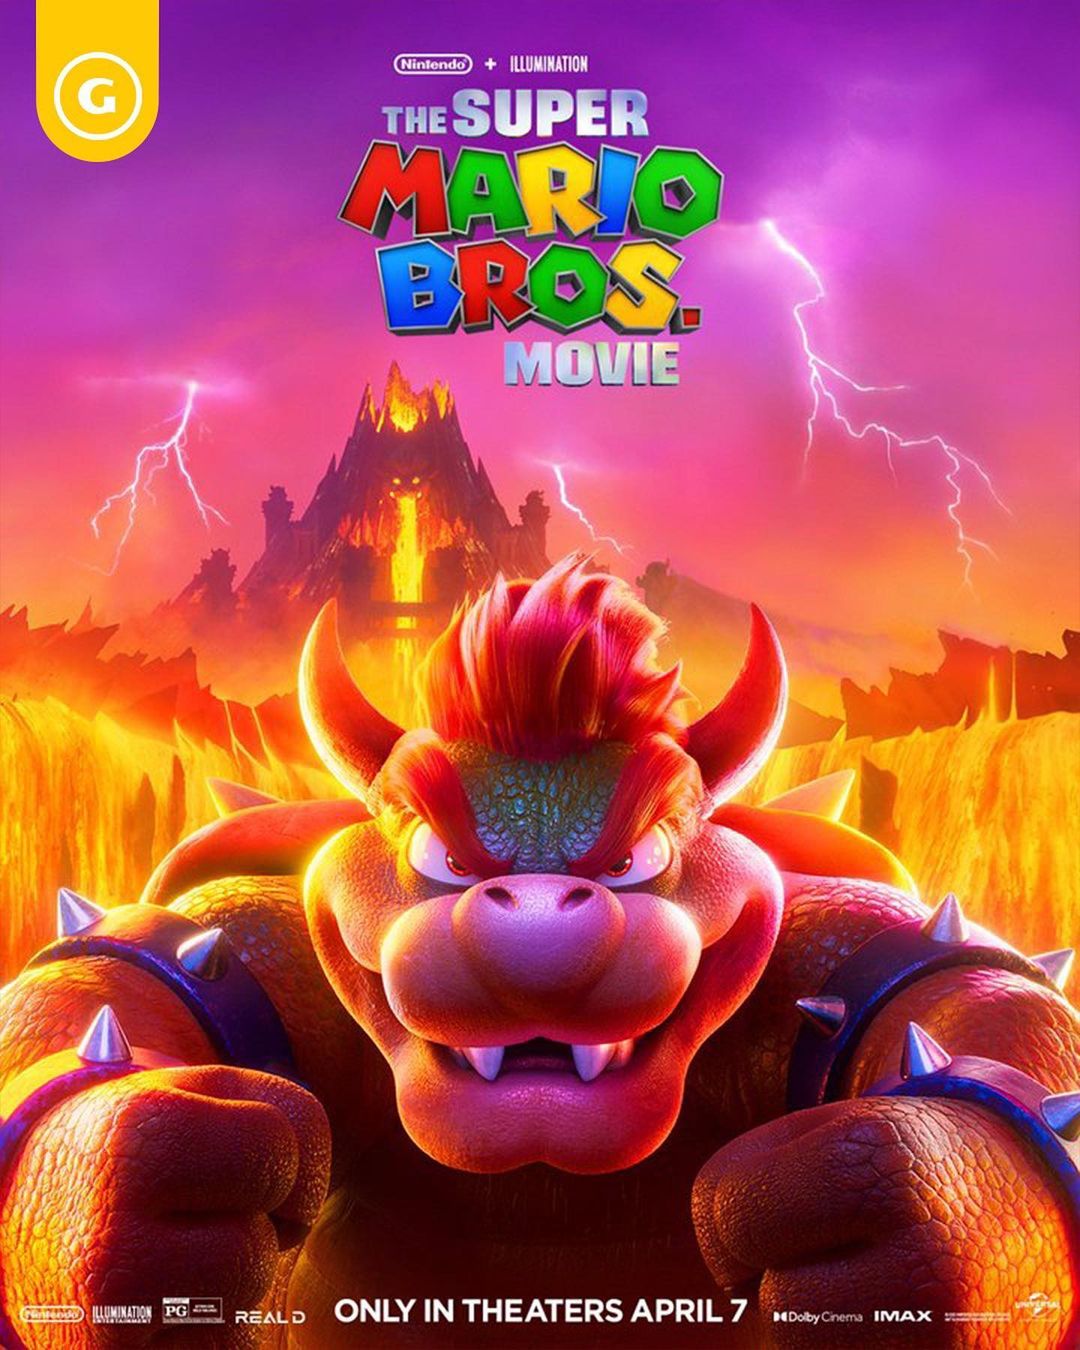 New Super Mario Bros. - GameSpot